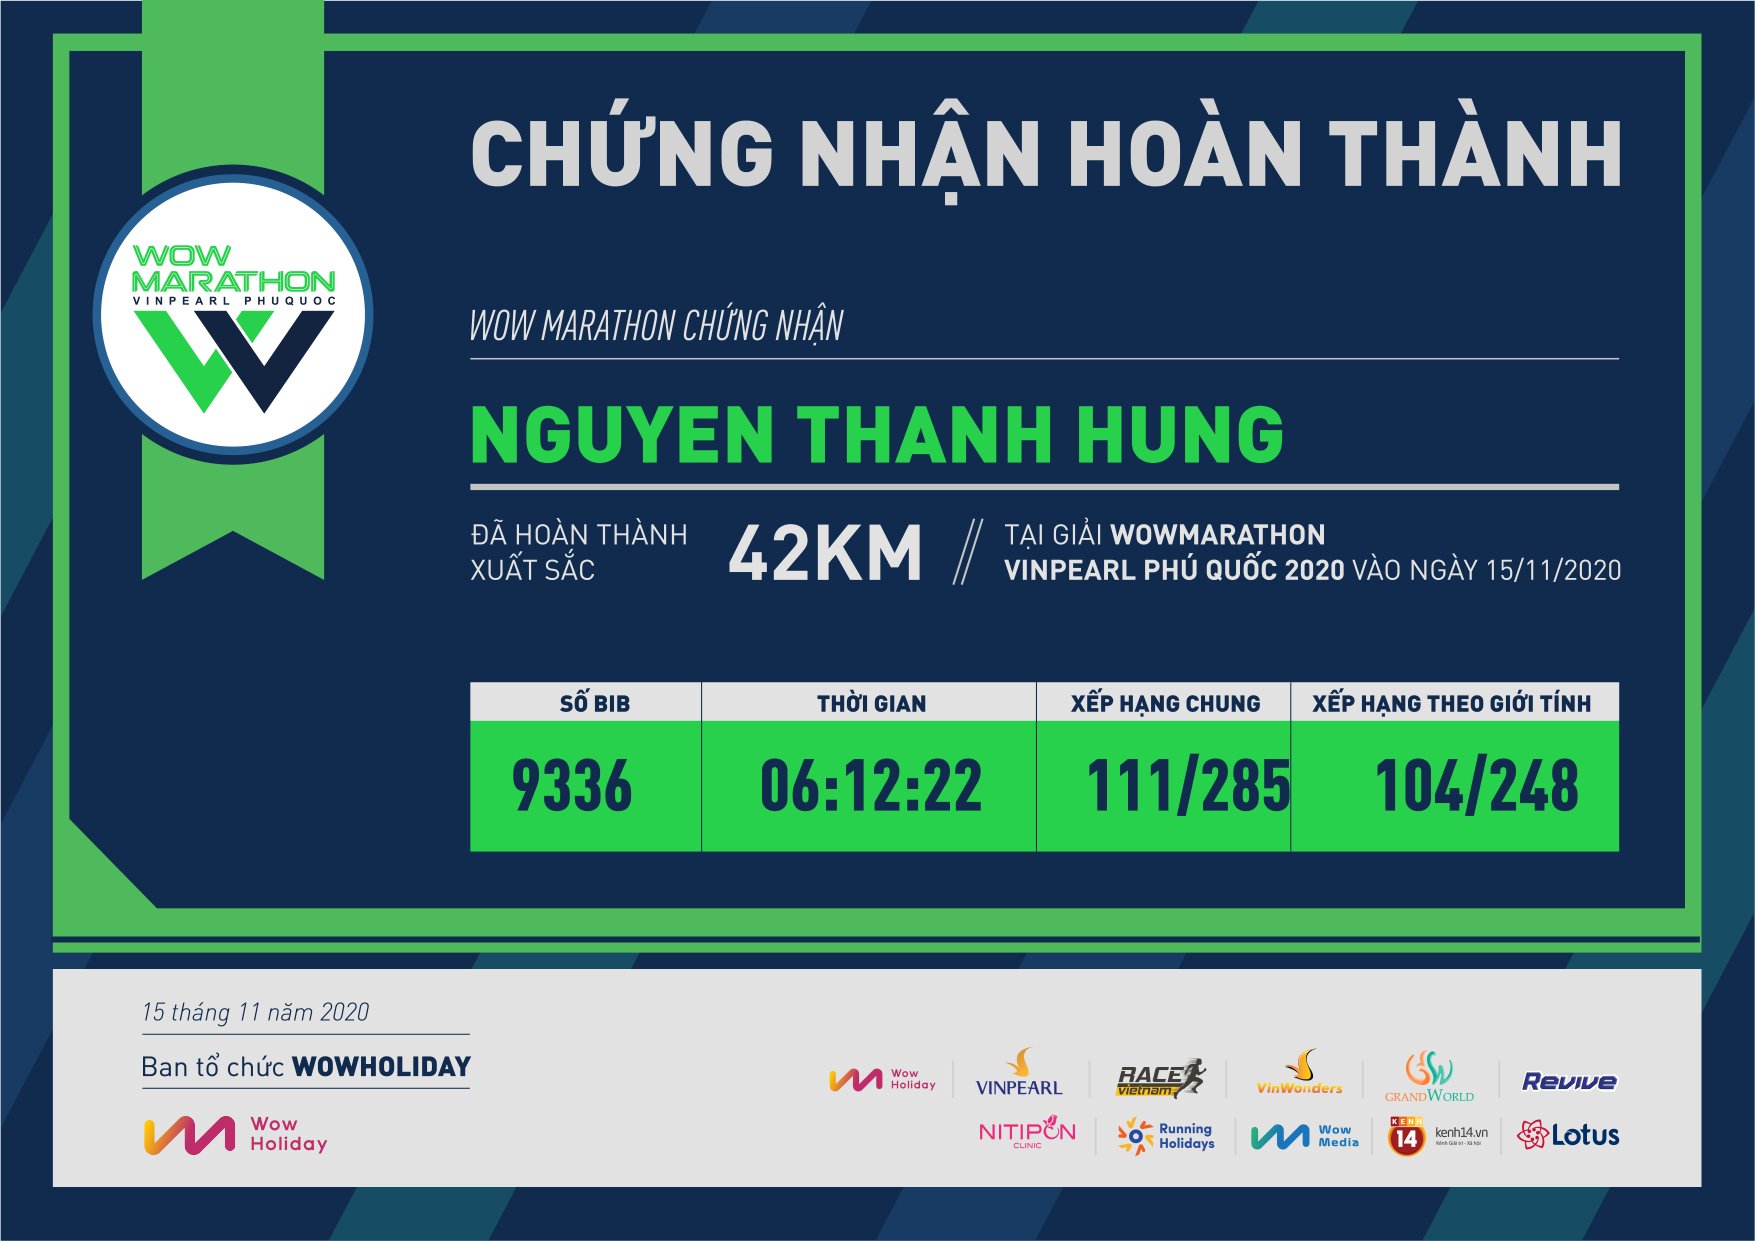 9336 - Nguyen Thanh Hung